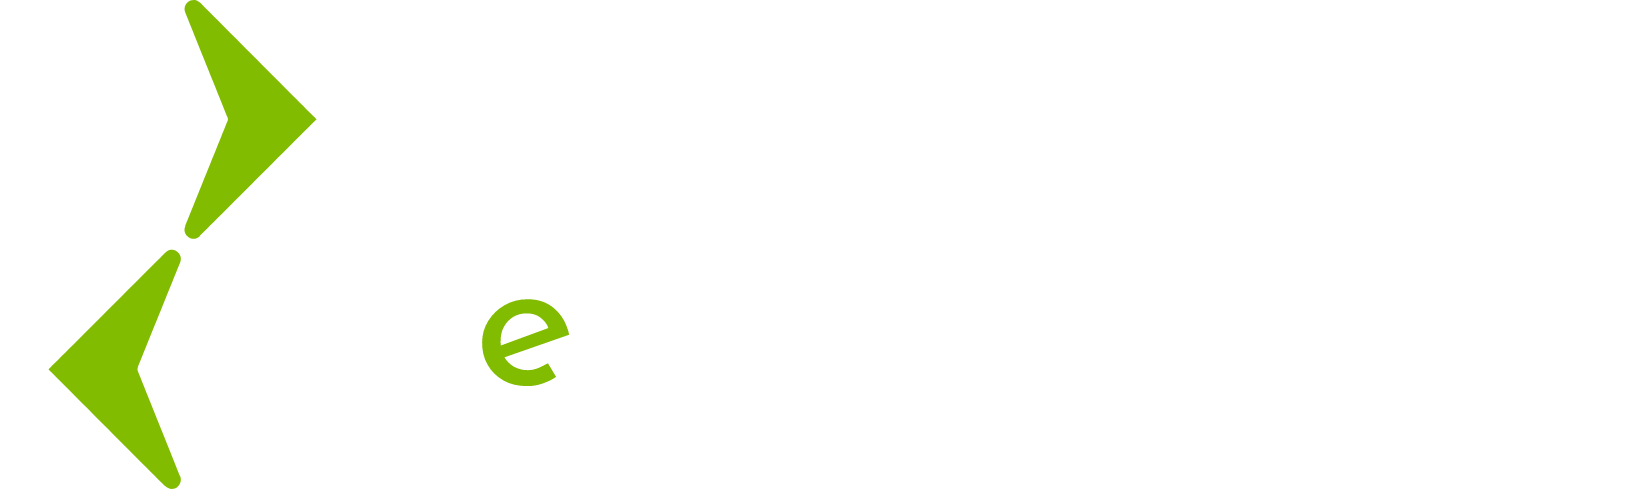 Lightning eMotors logo large for dark backgrounds (transparent PNG)